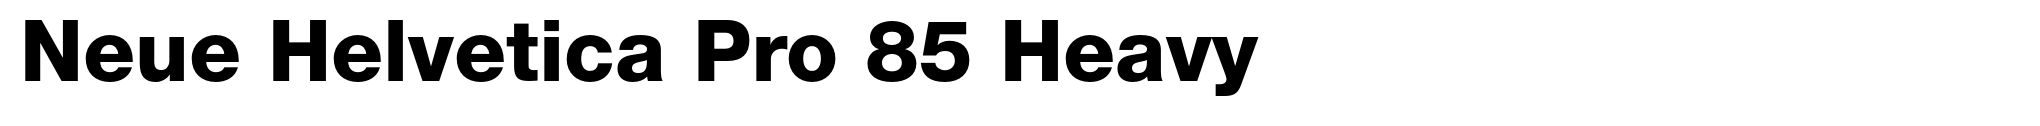 Neue Helvetica Pro 85 Heavy image